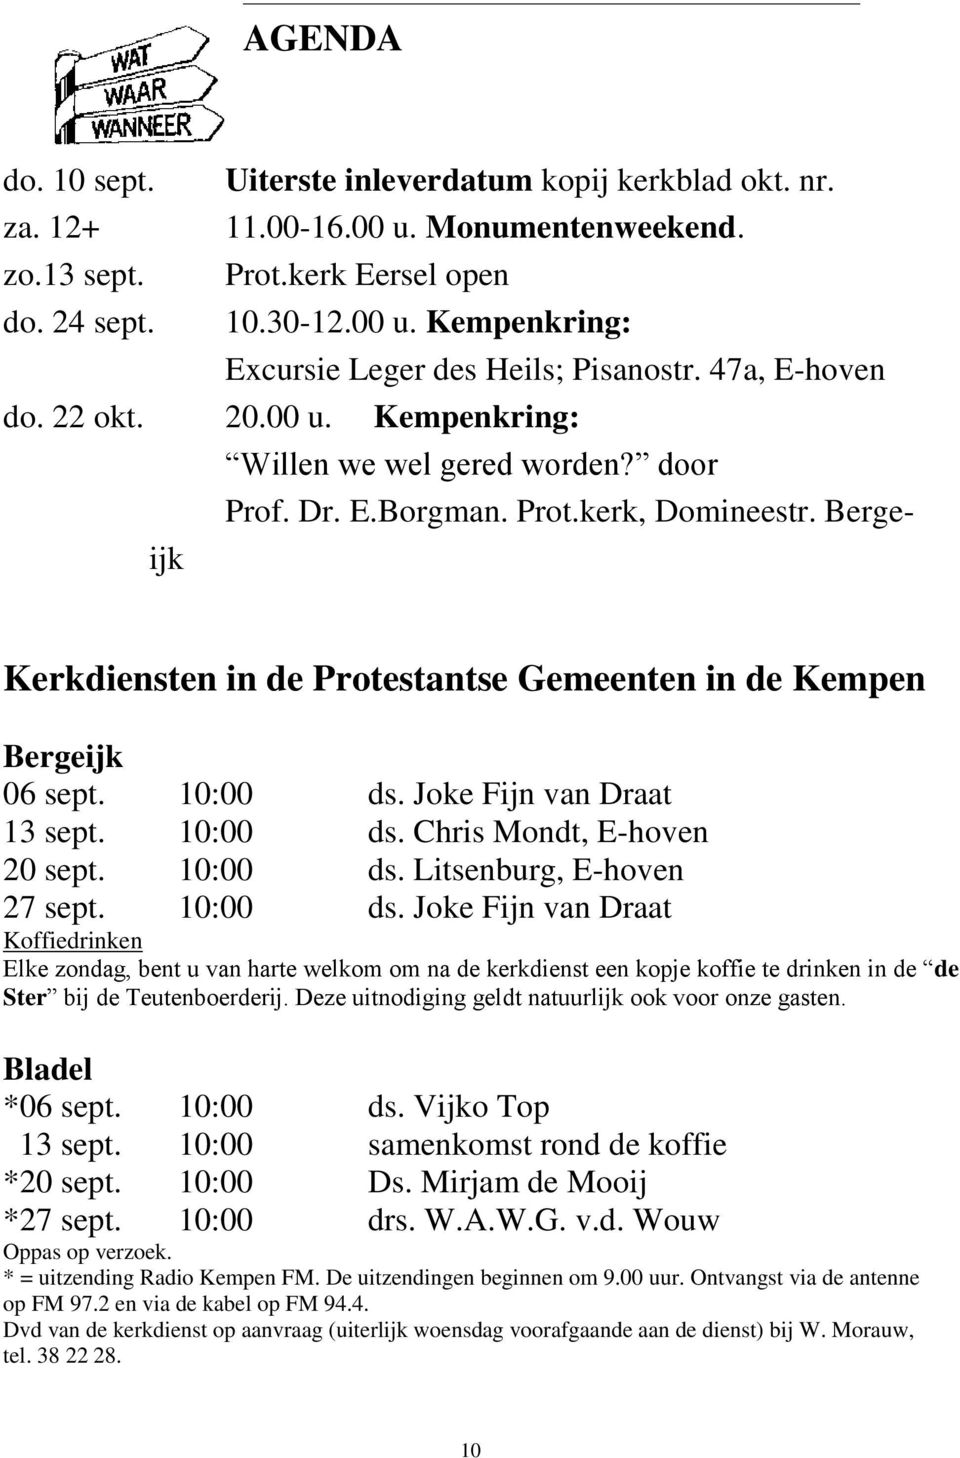 Bergeijk Kerkdiensten in de Protestantse Gemeenten in de Kempen Bergeijk 06 sept. 10:00 ds. Joke Fijn van Draat 13 sept. 10:00 ds. Chris Mondt, E-hoven 20 sept. 10:00 ds. Litsenburg, E-hoven 27 sept.